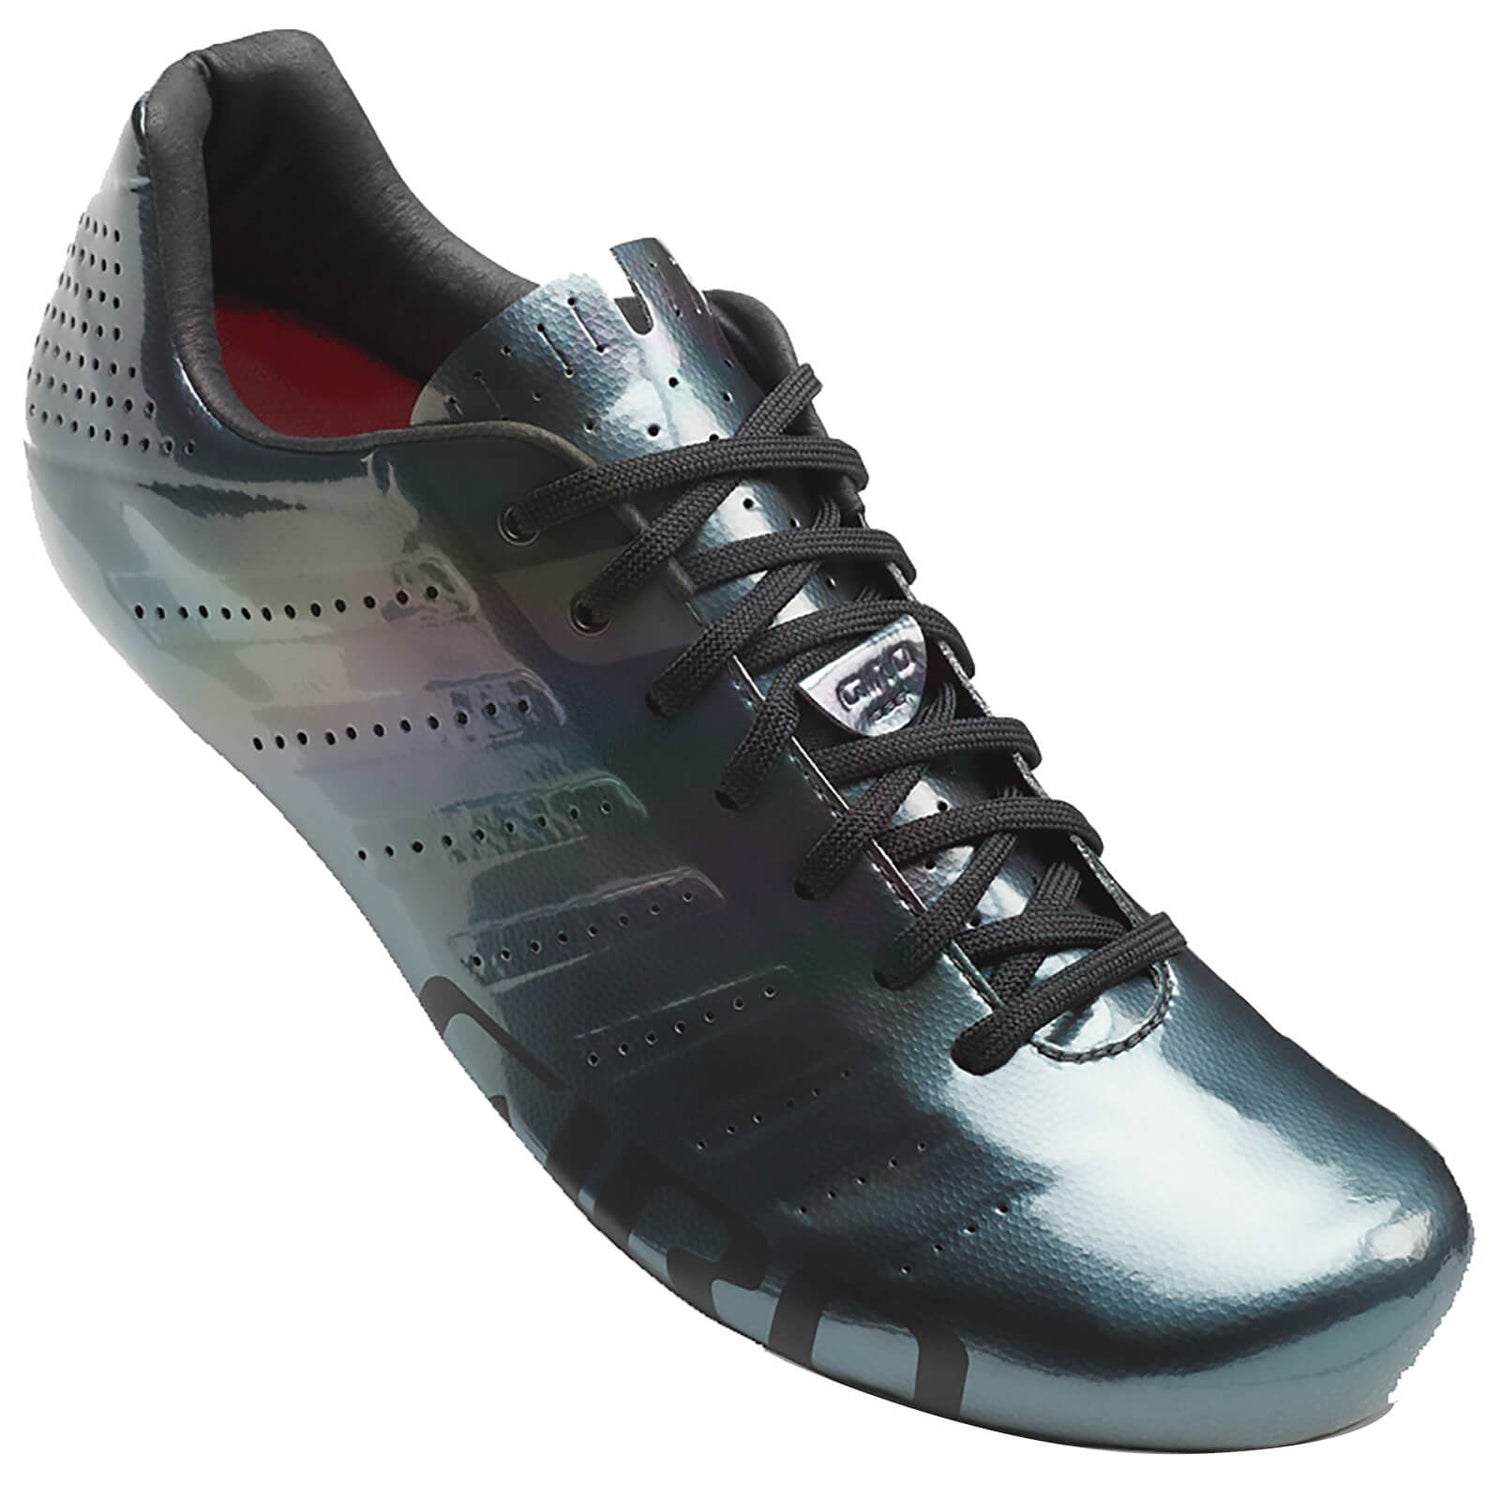 Giro Empire SLX Road Cycling Shoes - Metallic Charcoal